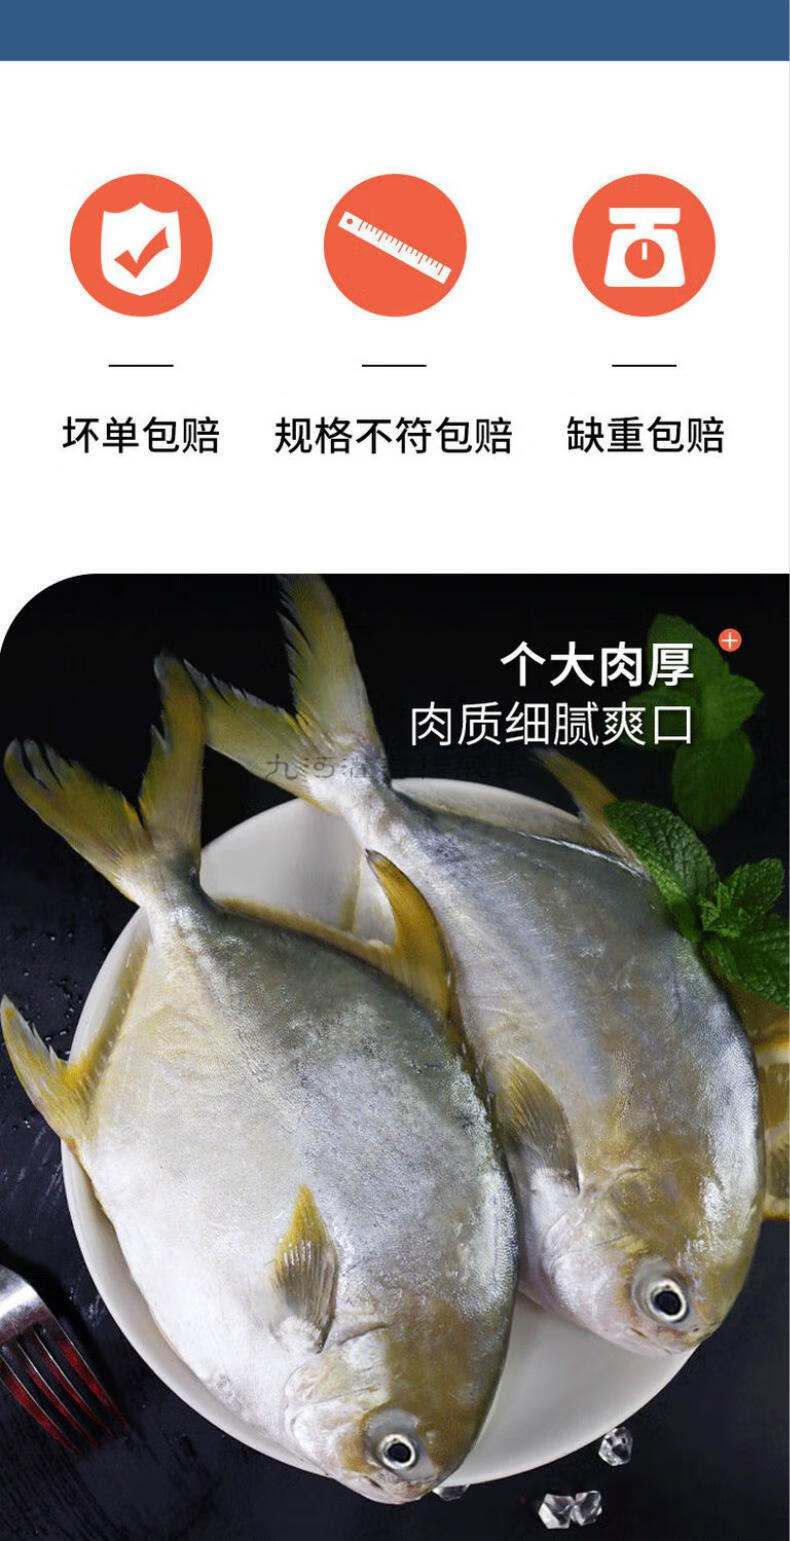 九河灌海旗舰店 特大号 金鲳鱼 新鲜冷冻 金昌鱼 生鲜鱼类 海鲜水产